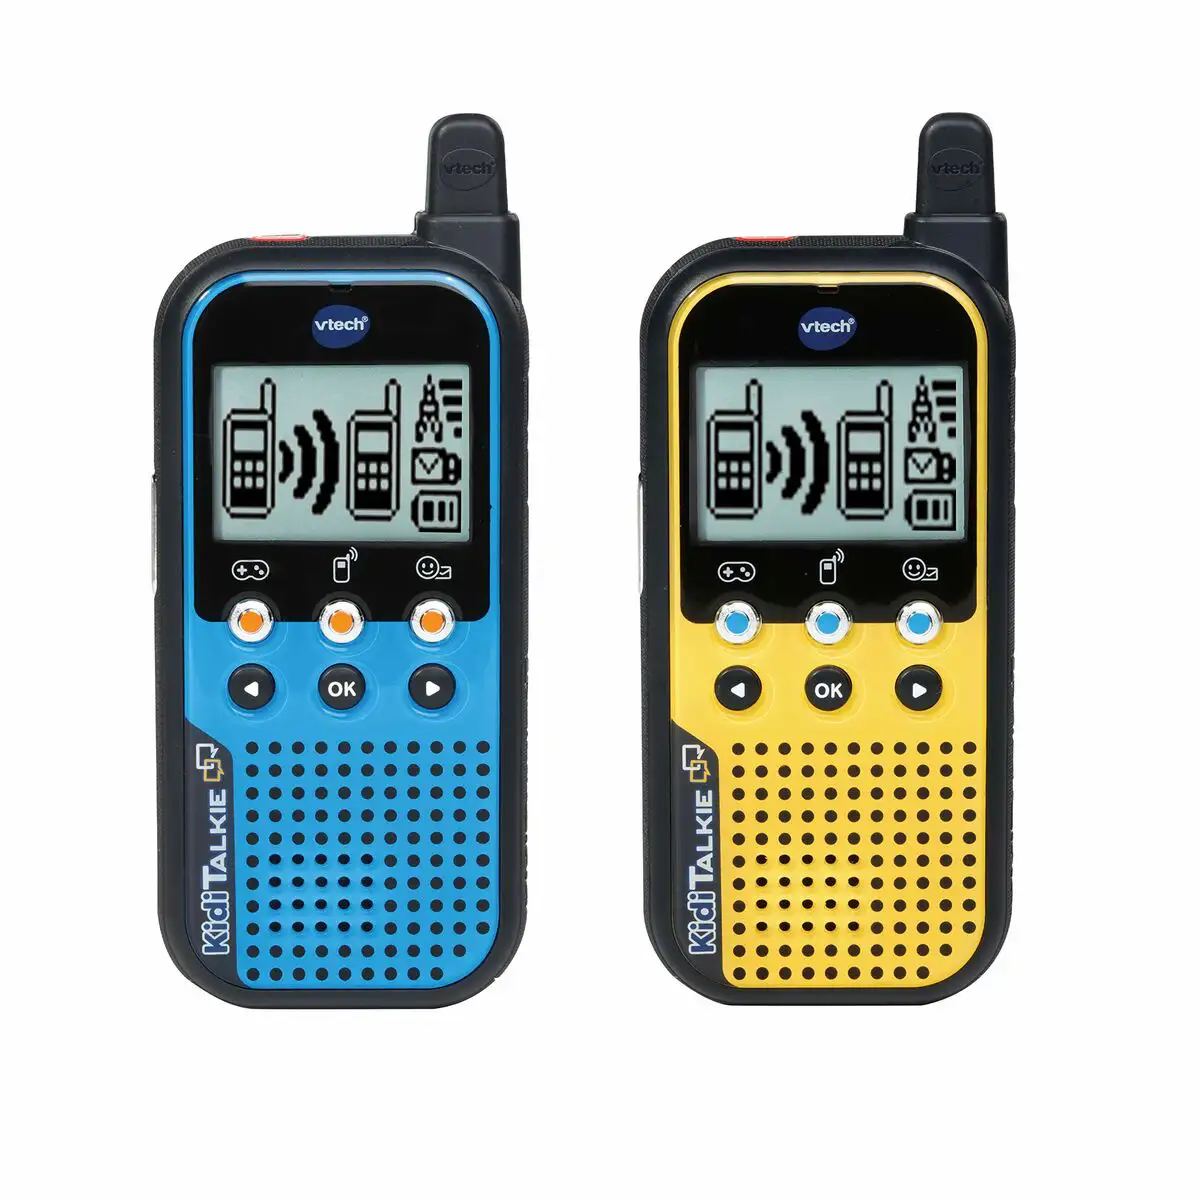 Talkie walkie vtech 80 518564 bleu jaune reconditionne c _5722. DIAYTAR SENEGAL - Votre Portail Vers l'Exclusivité. Explorez notre boutique en ligne pour trouver des produits uniques et exclusifs, conçus pour les amateurs de qualité.